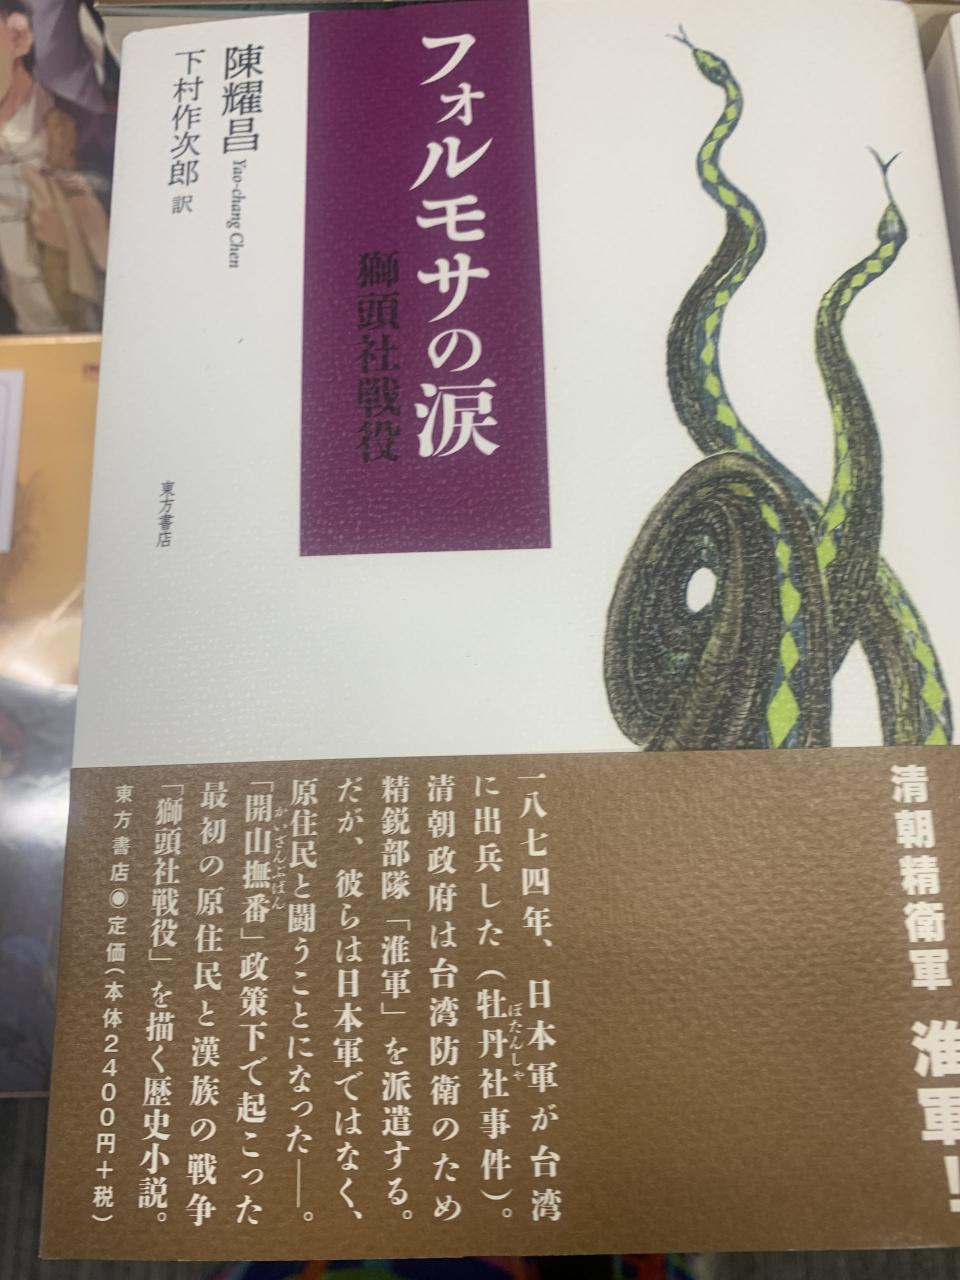 「獅頭花」翻譯日文版新書，書名「福爾摩沙之淚獅頭社戰役」
<br />